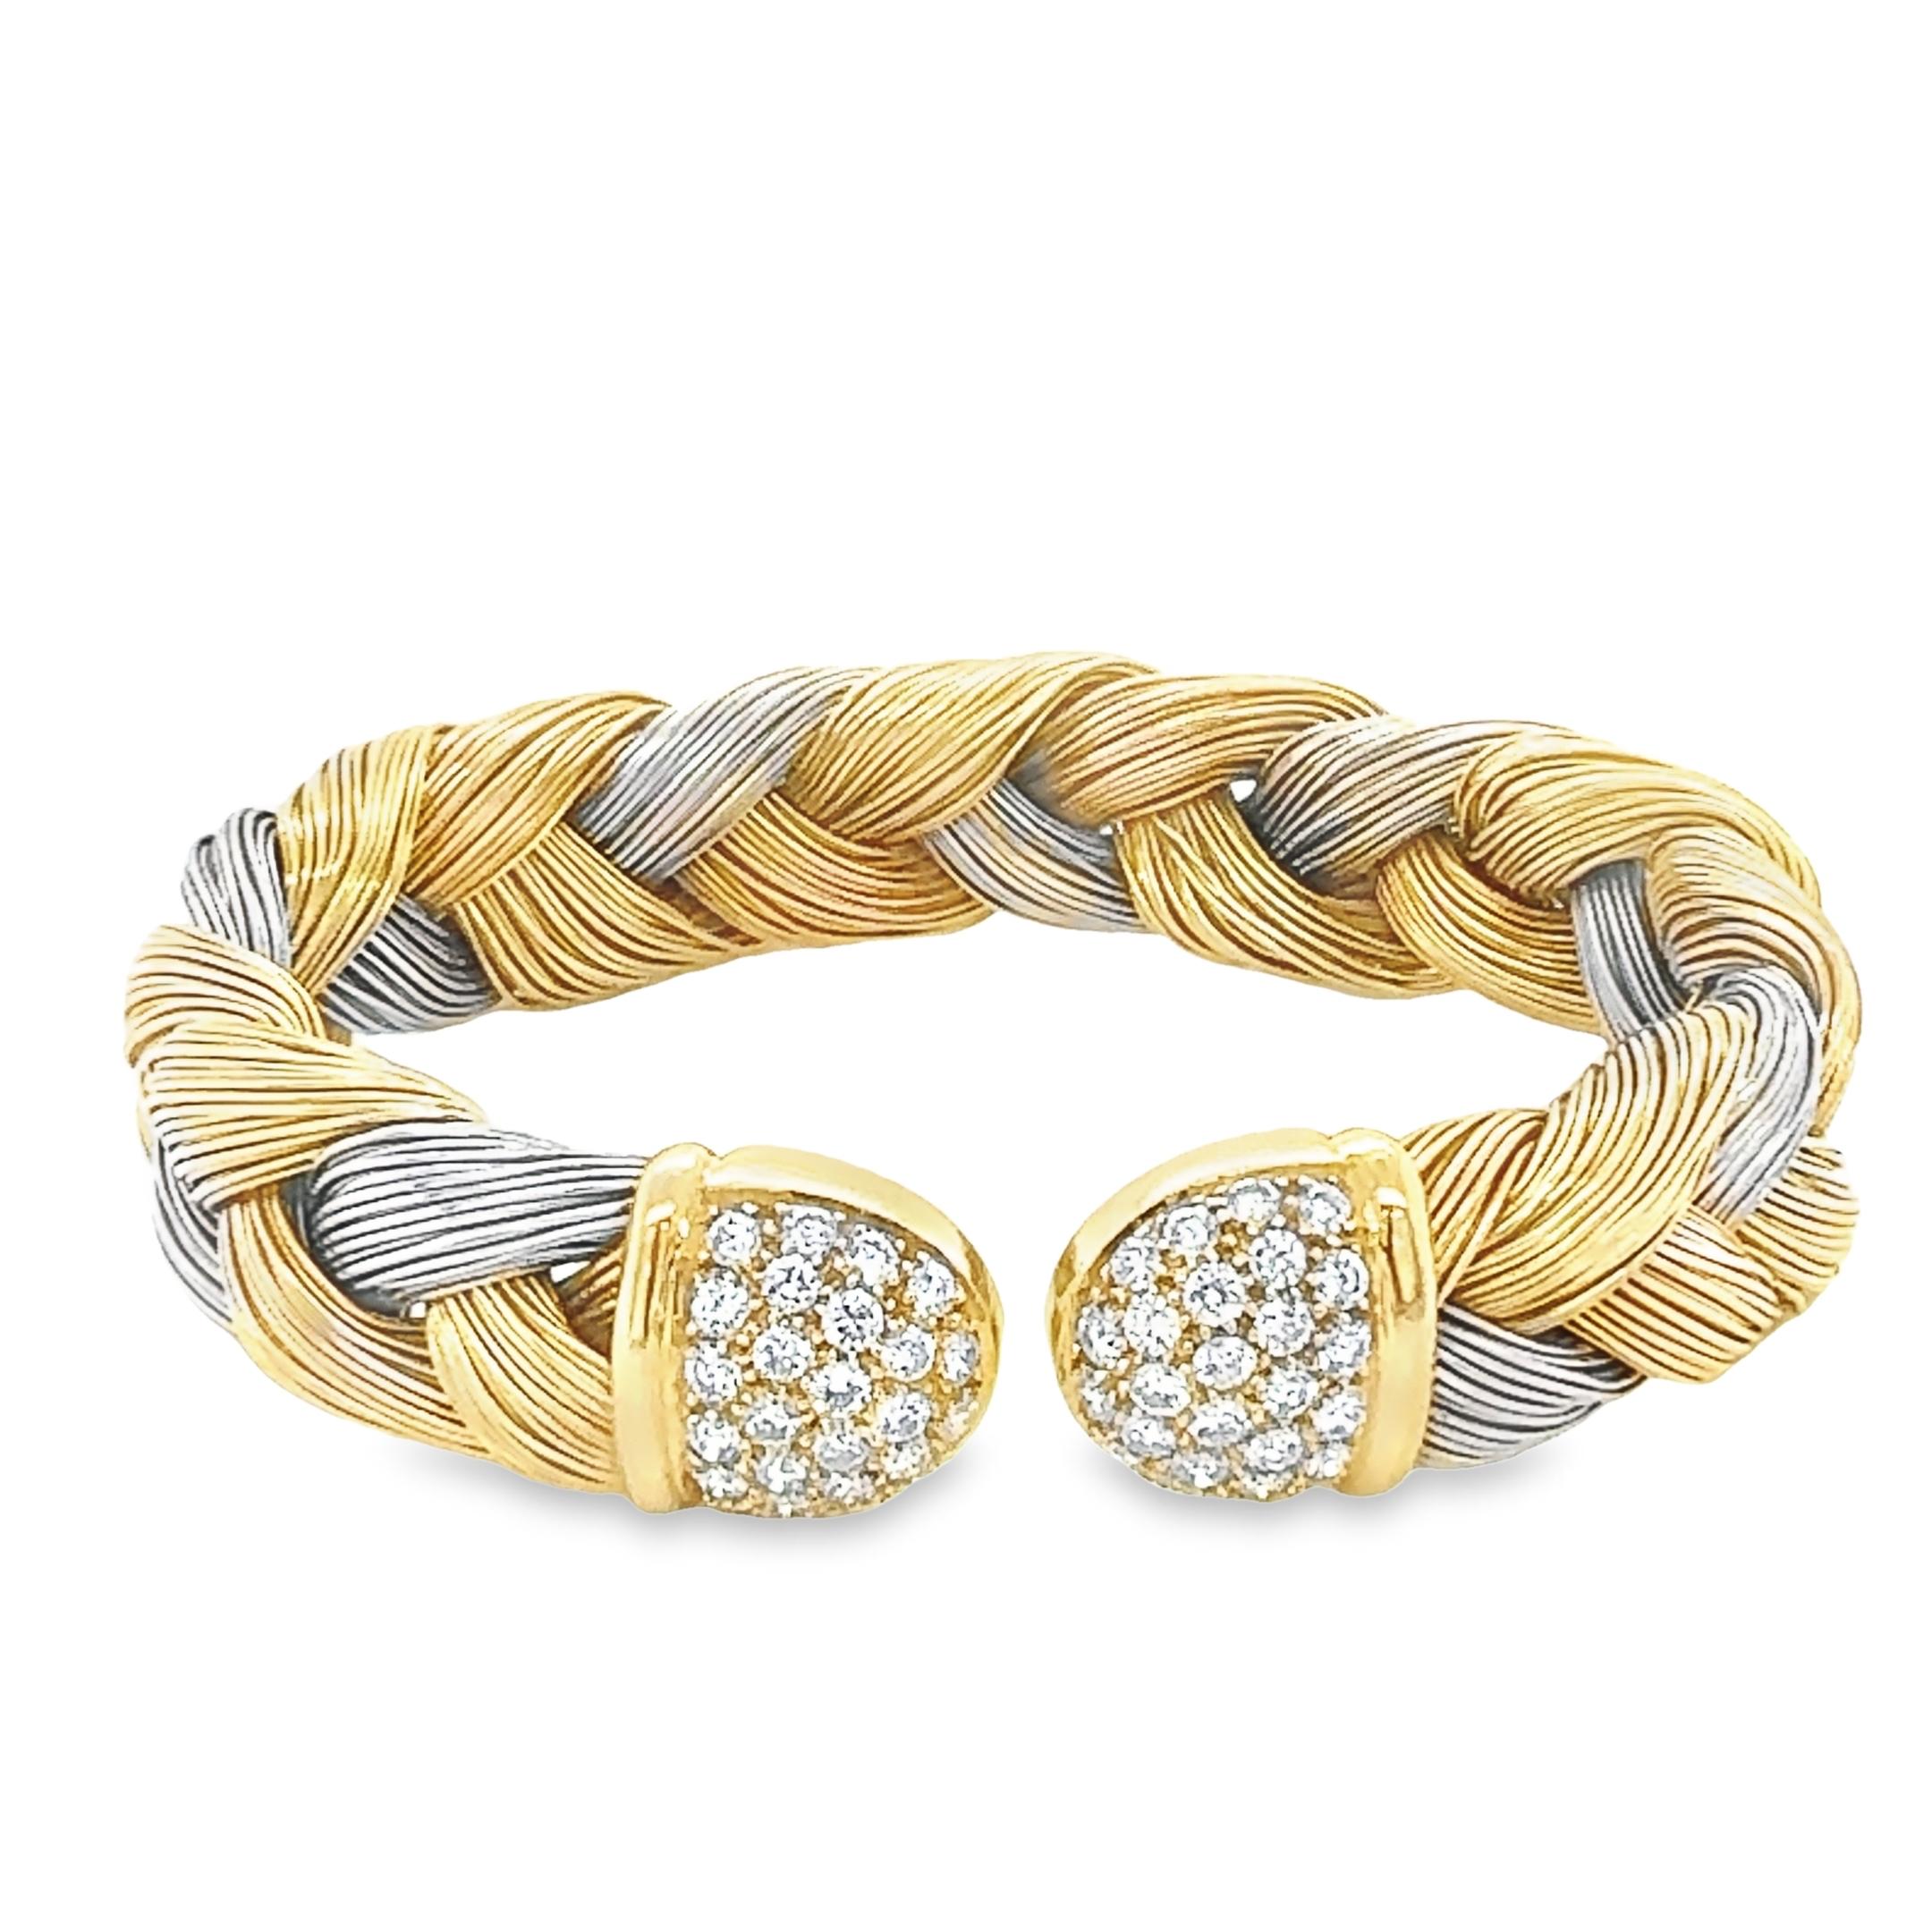 Ce bracelet manchette italien tissé sur mesure est réalisé en deux tons d'or jaune et d'or blanc 18 carats avec une finition hautement polie. Il est orné de 52 diamants ronds naturels de taille brillant qui s'enroulent harmonieusement autour des